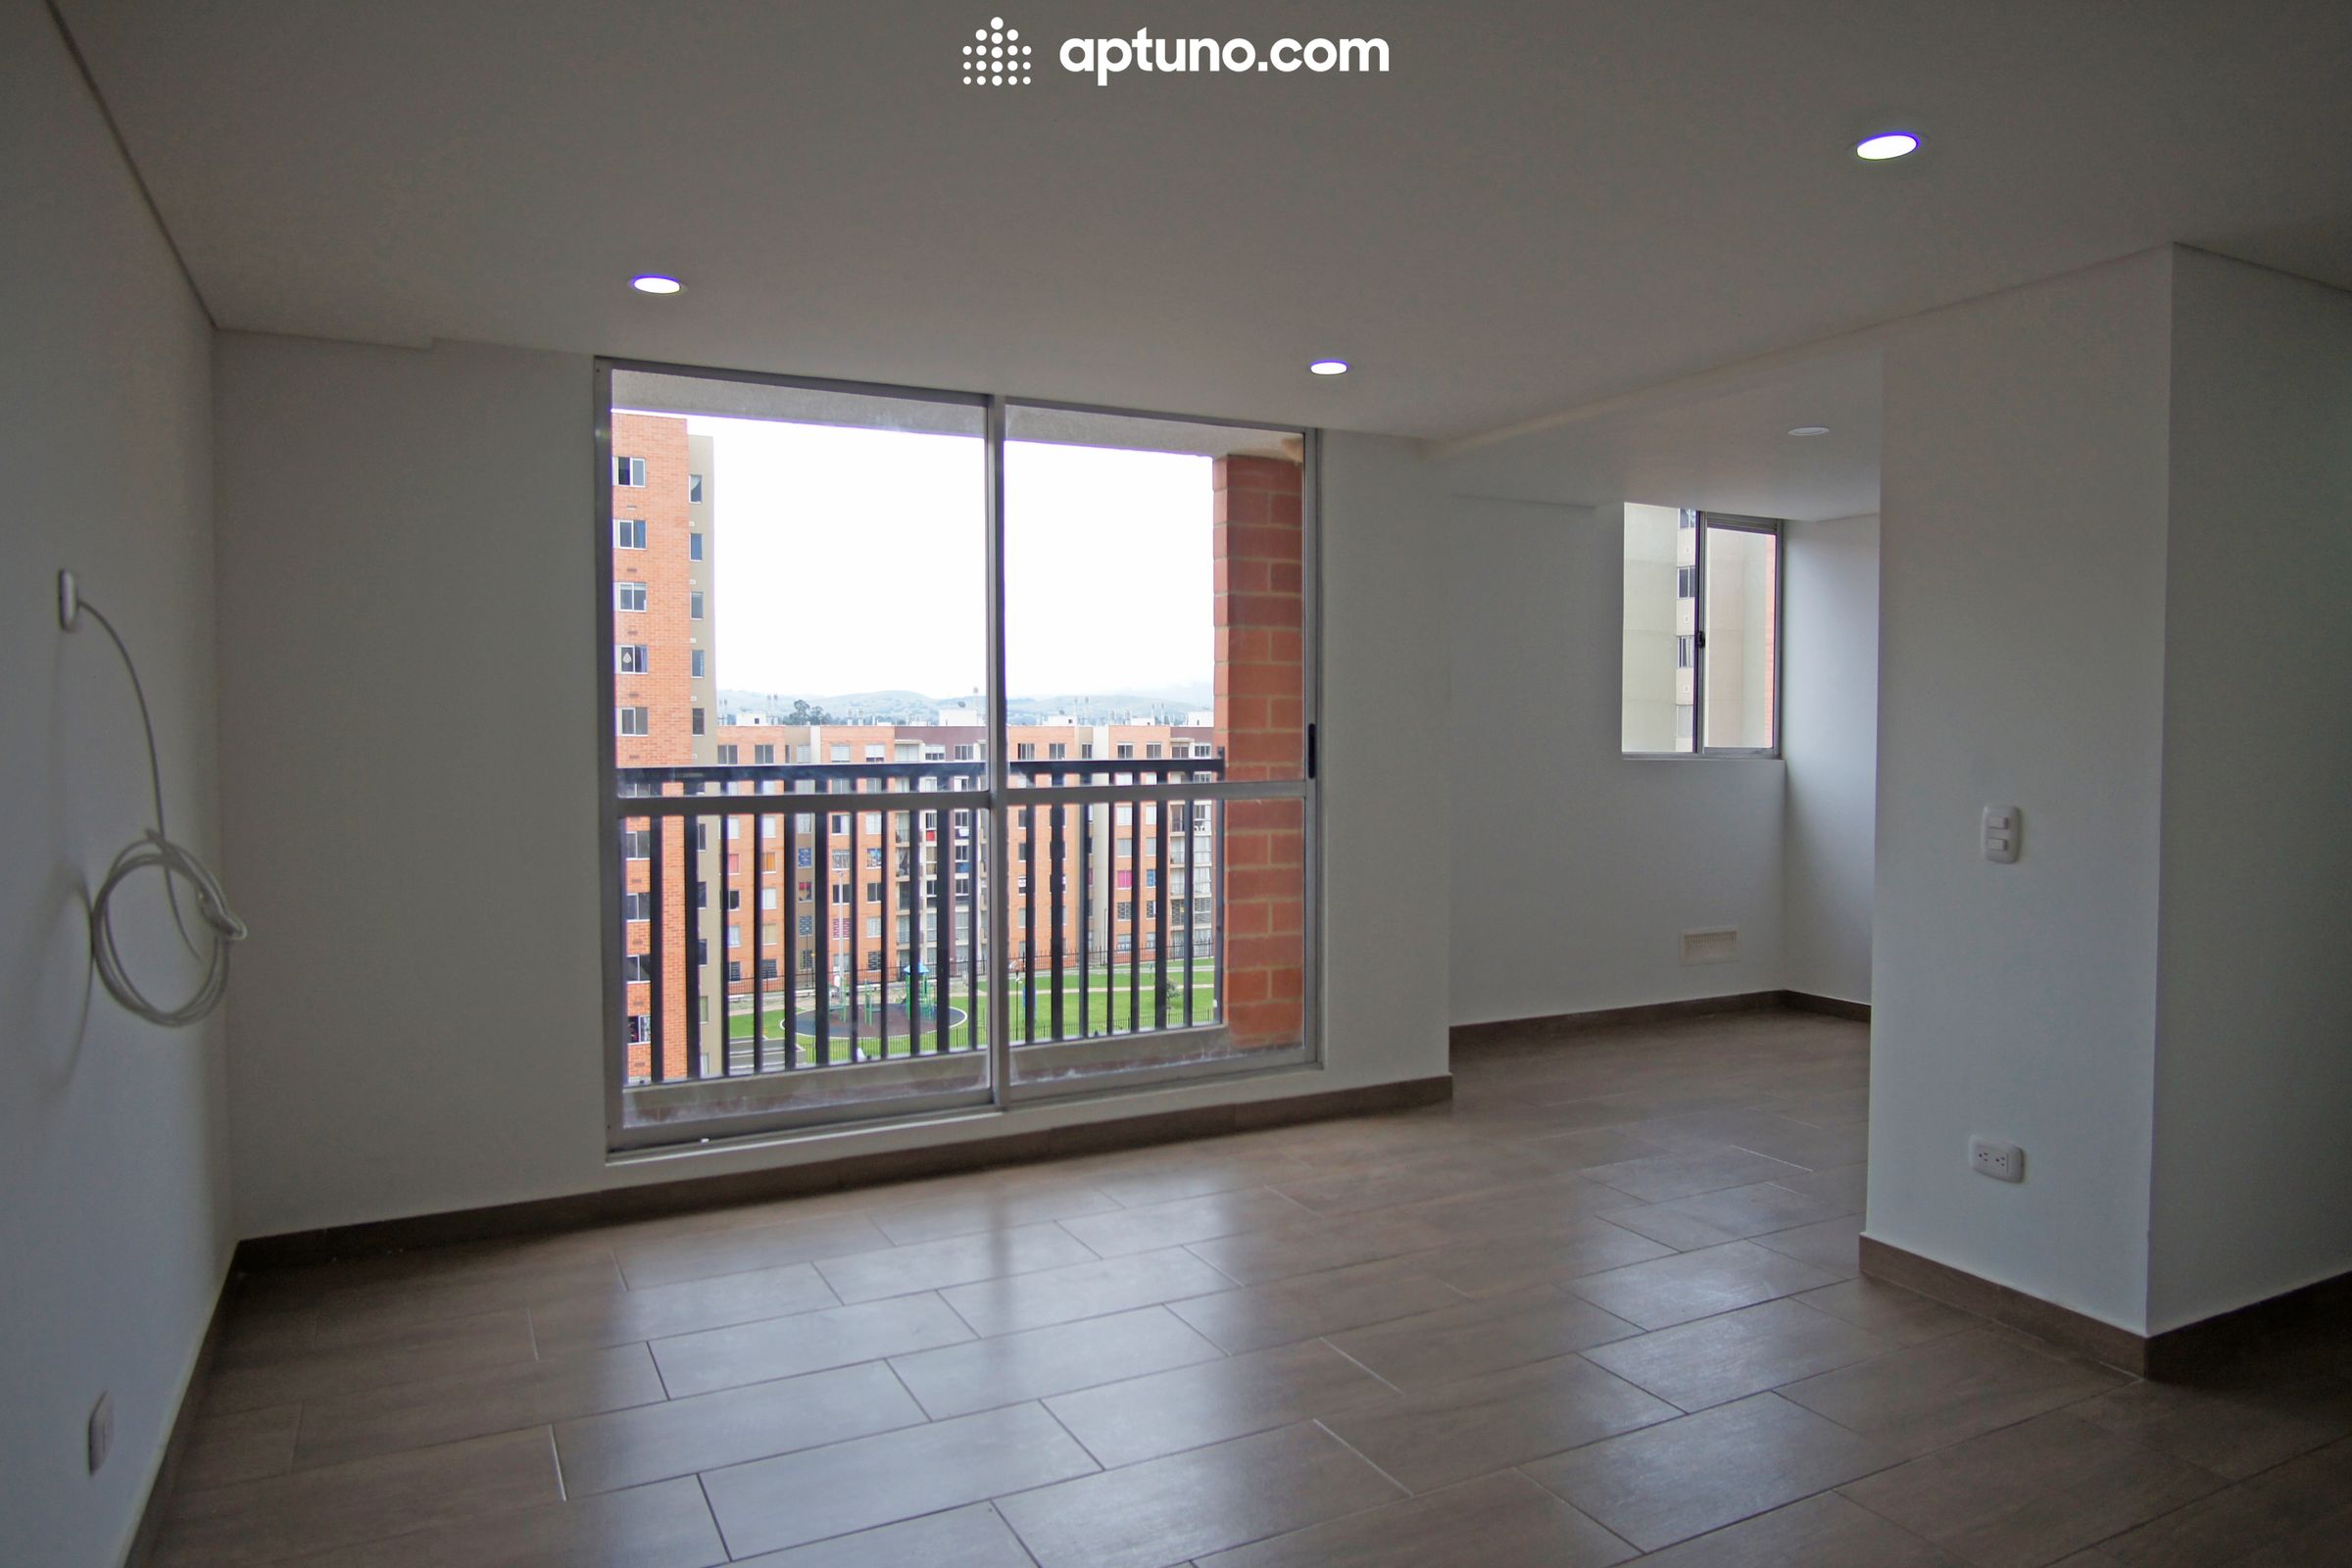 Apartamento en arriendo Madrid 54 m² - $ 810.000,00